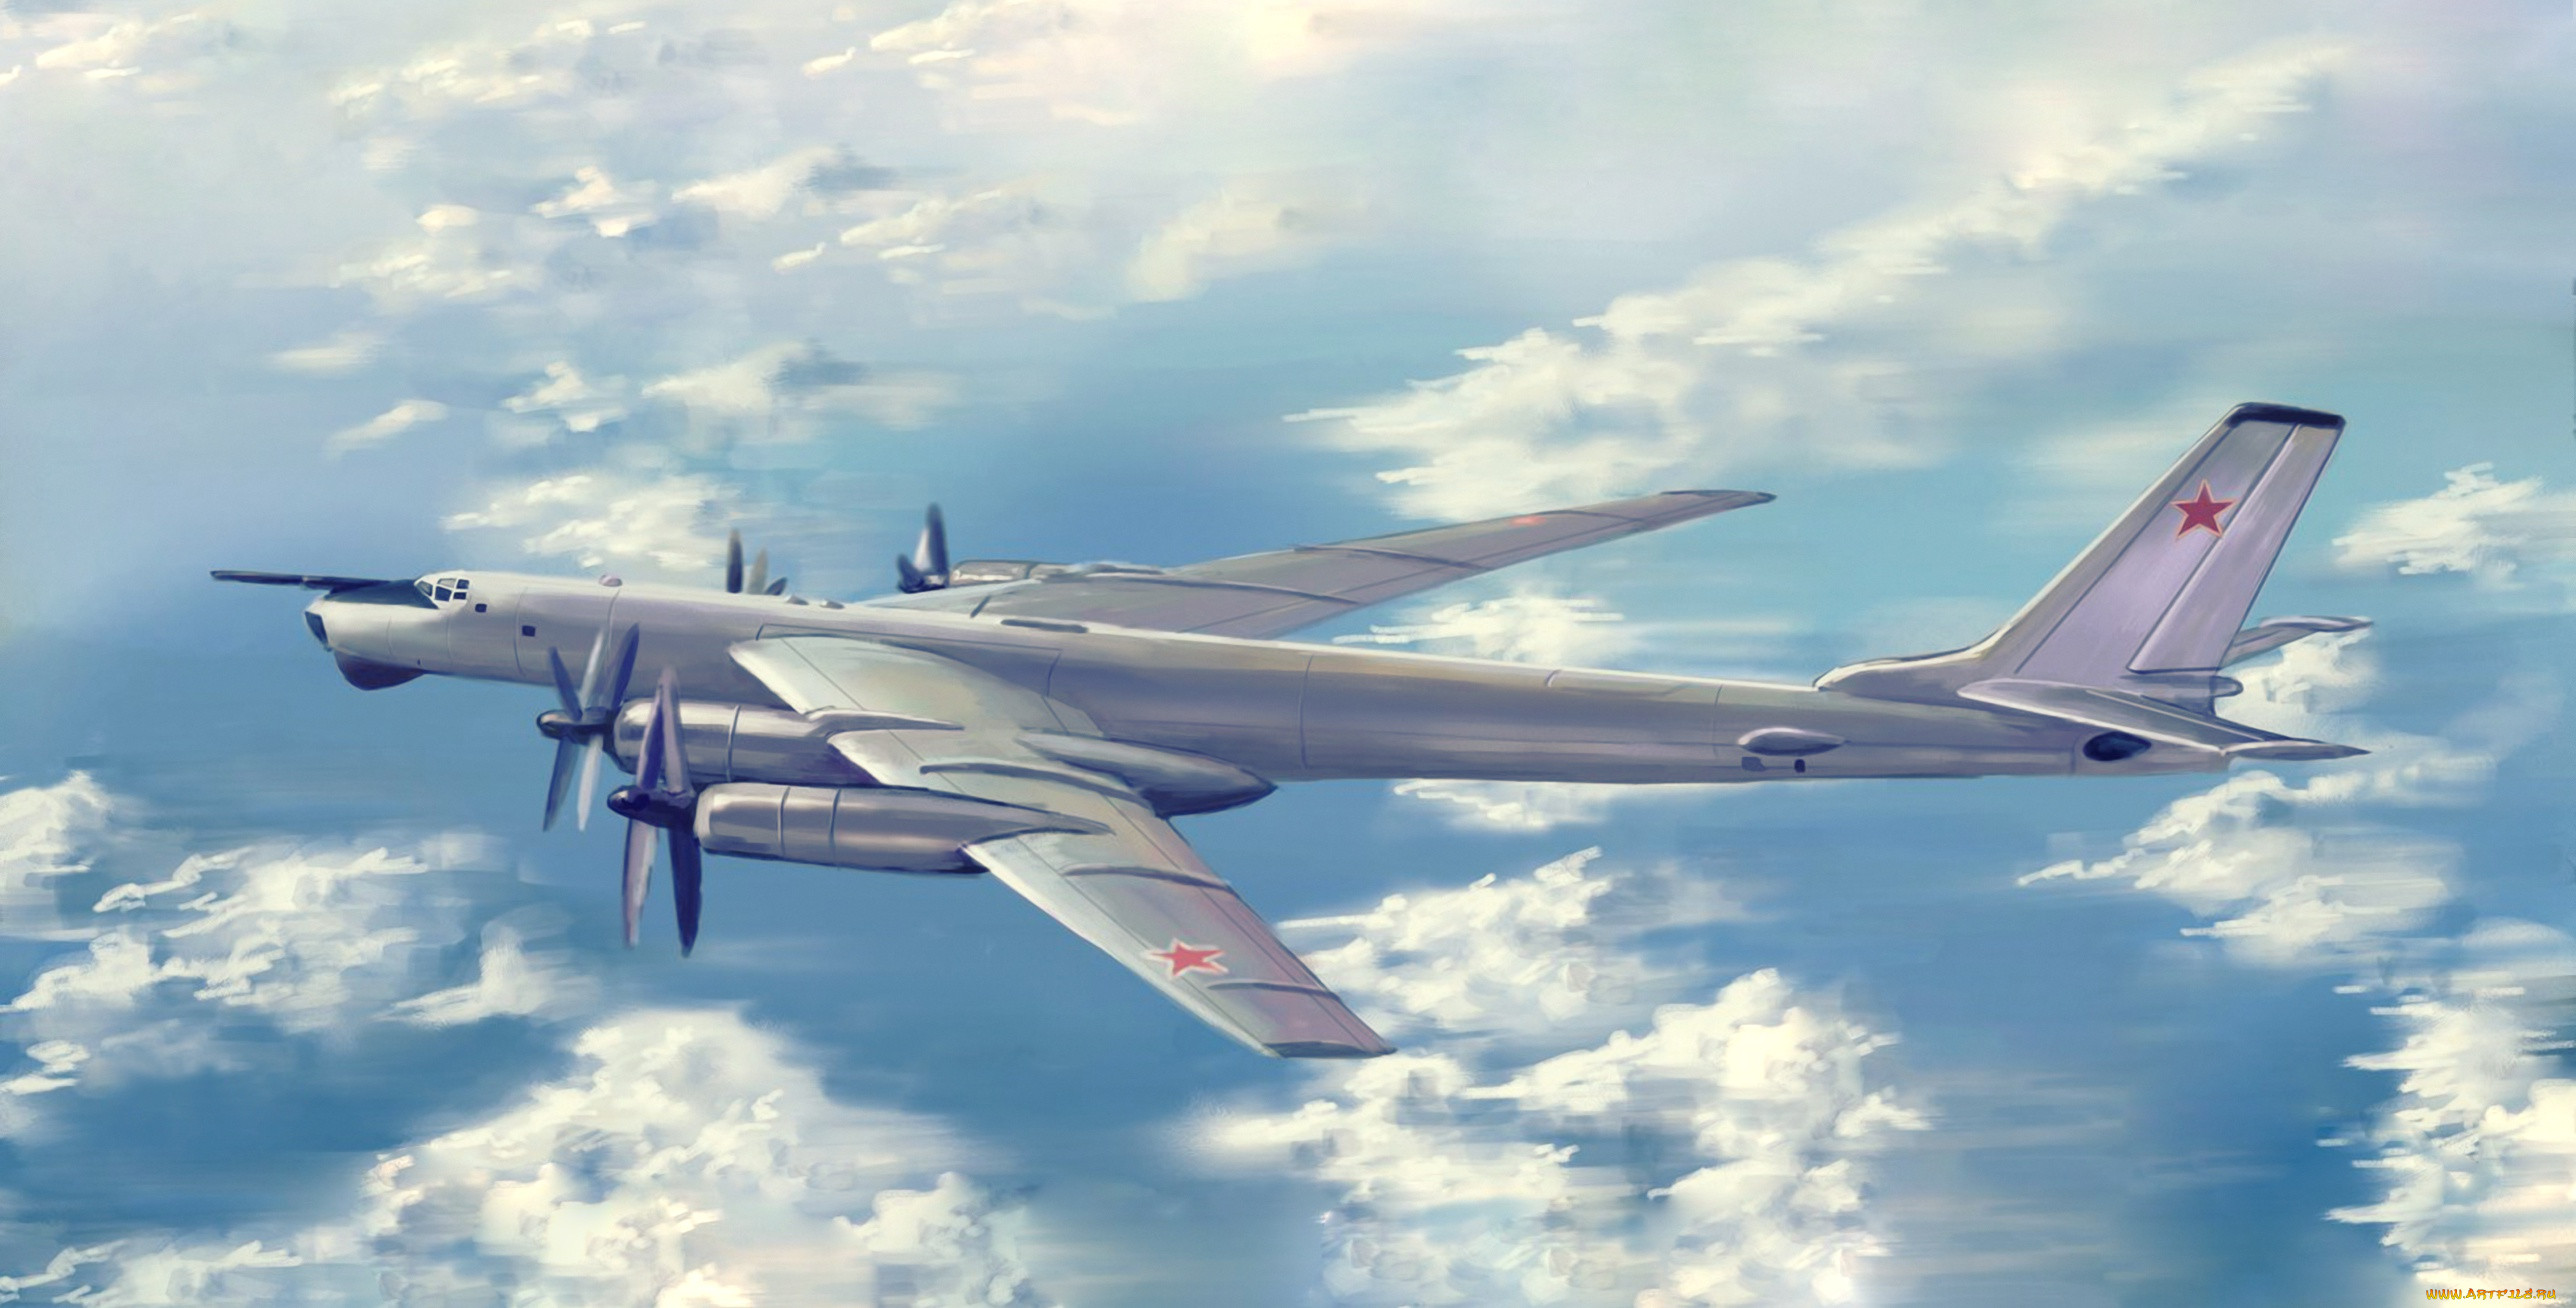 ту-95мс, авиация, 3д, рисованые, v-graphic, бомбардировщик, ракетоносец, ту95, стратегический, турбовинтовой, рисунок